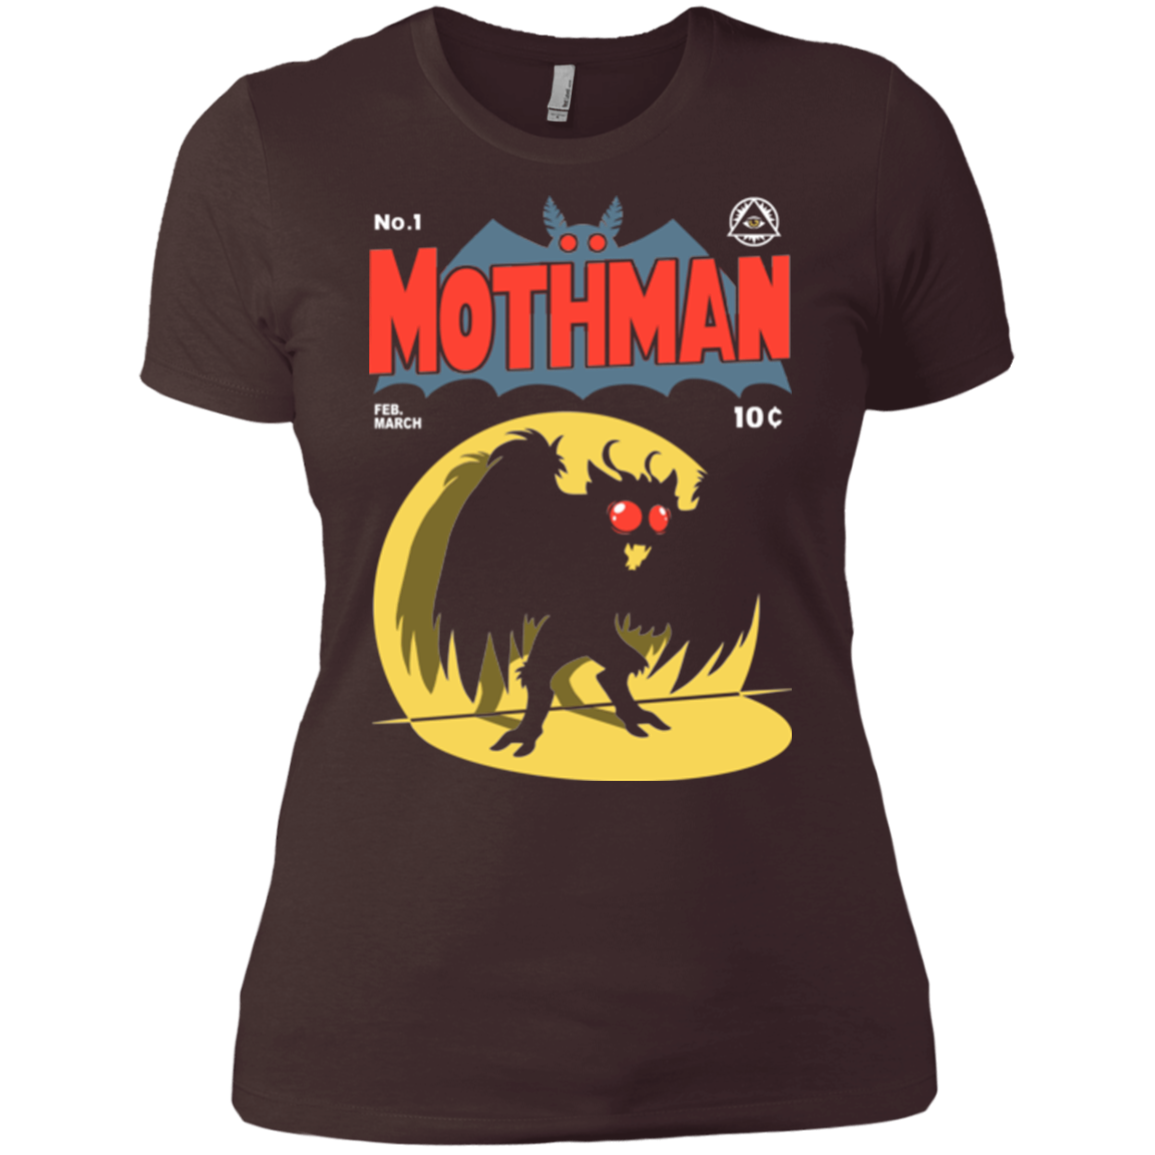 Mothman Women's Premium T-Shirt